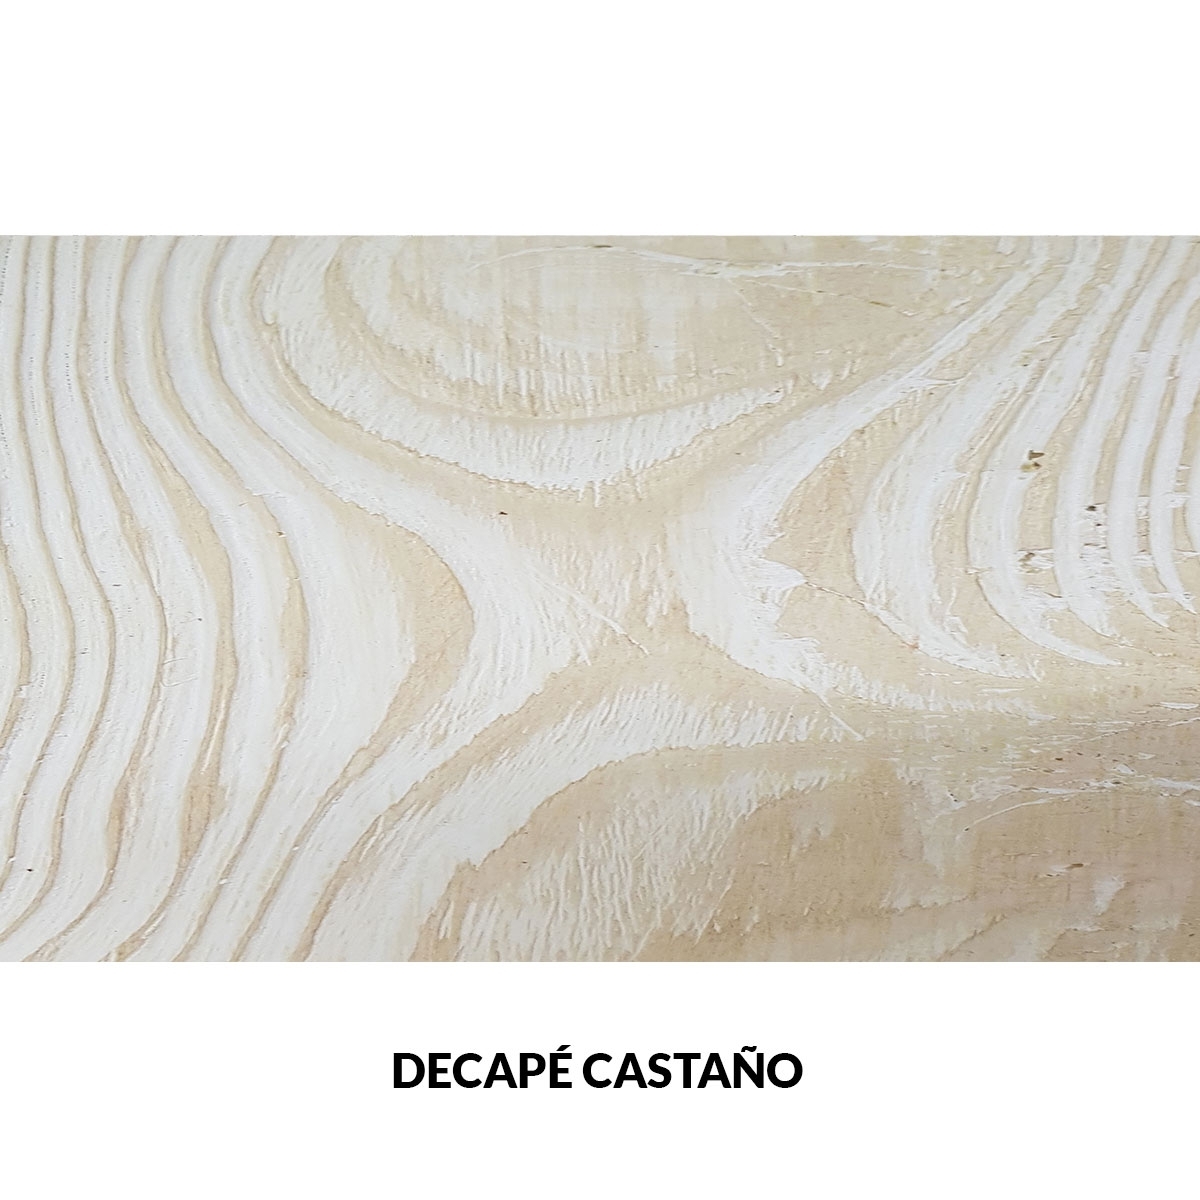 Panel rústico sin lamas imitación madera de 400x62cm decape castaño